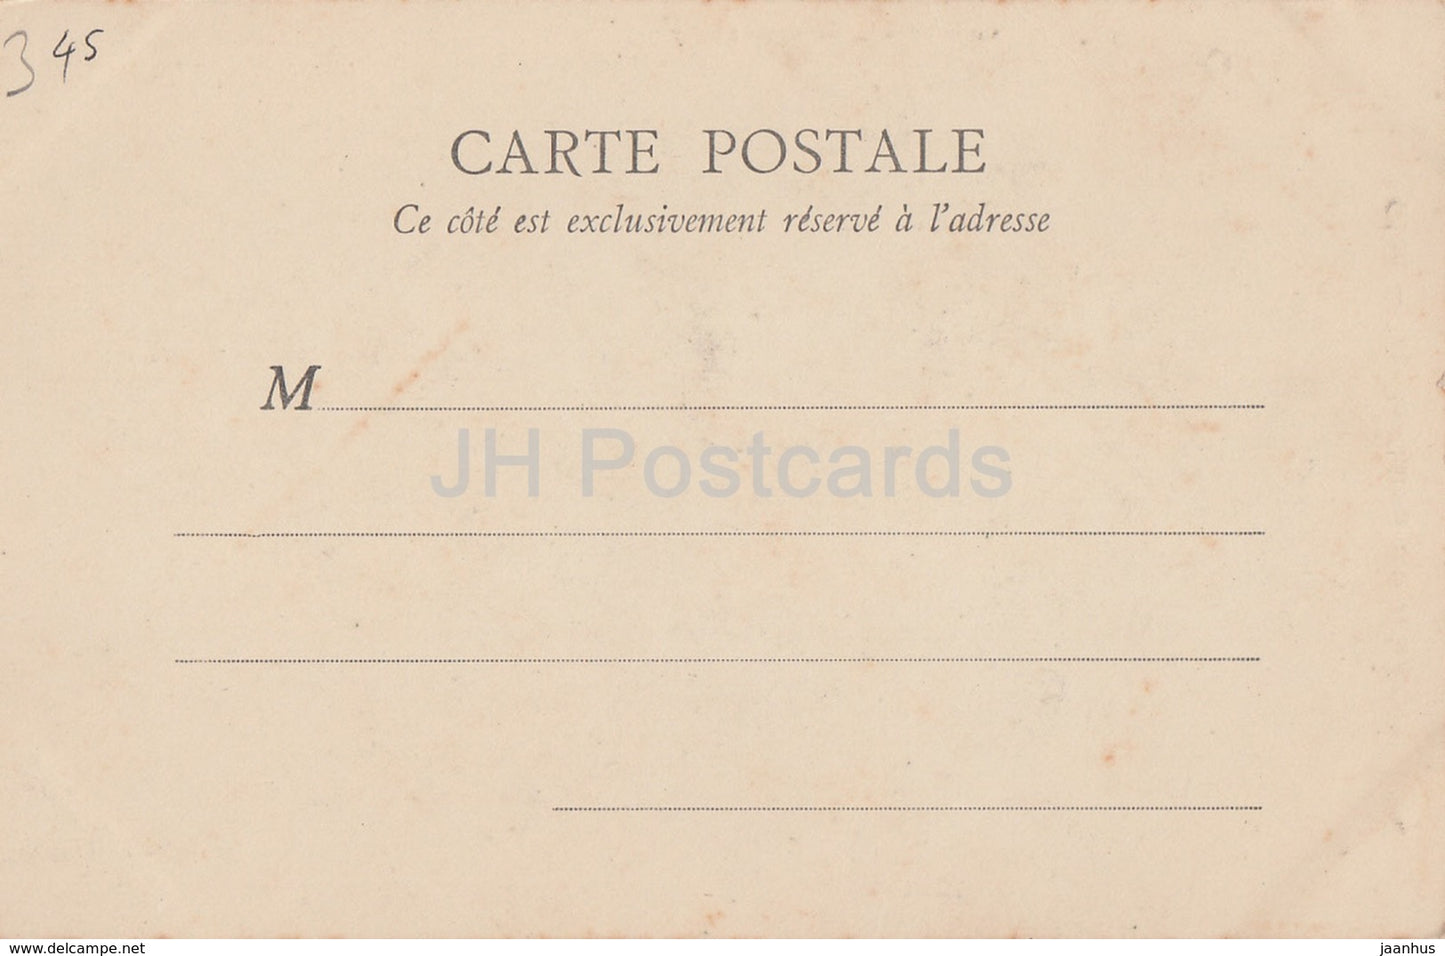 Gien - Tour du Chateau - cote de la Prison - castle - 3601 - old postcard - France - unused